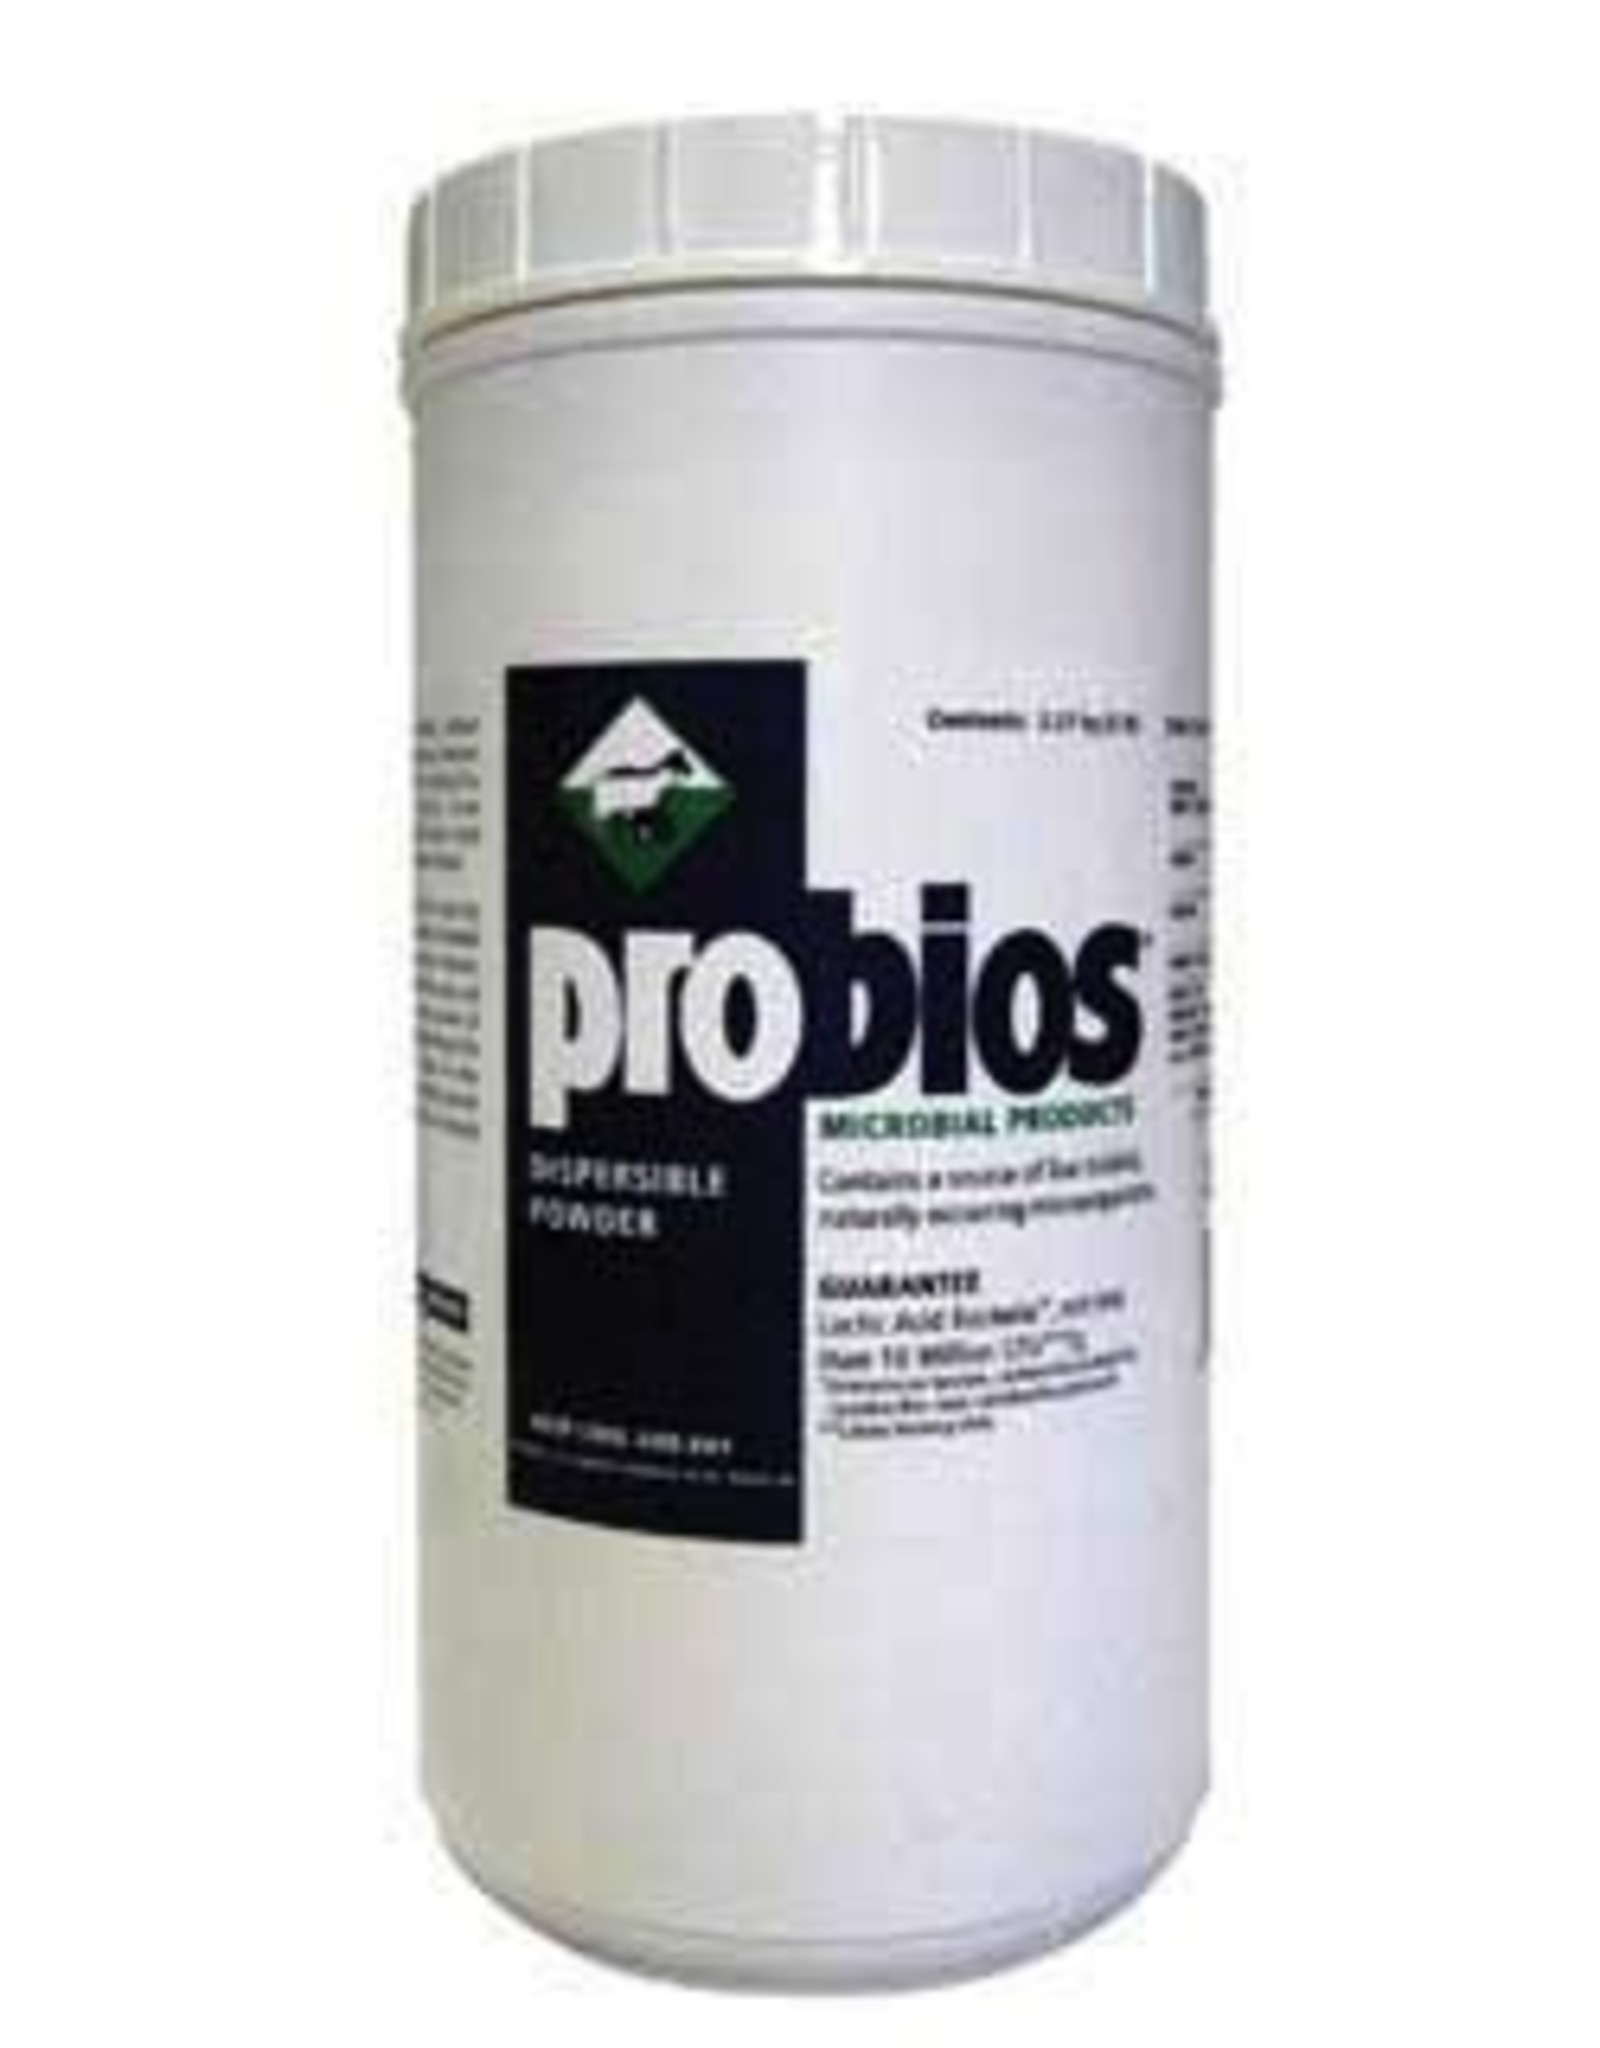 Probios Probios Dispersible Powder - 5lb